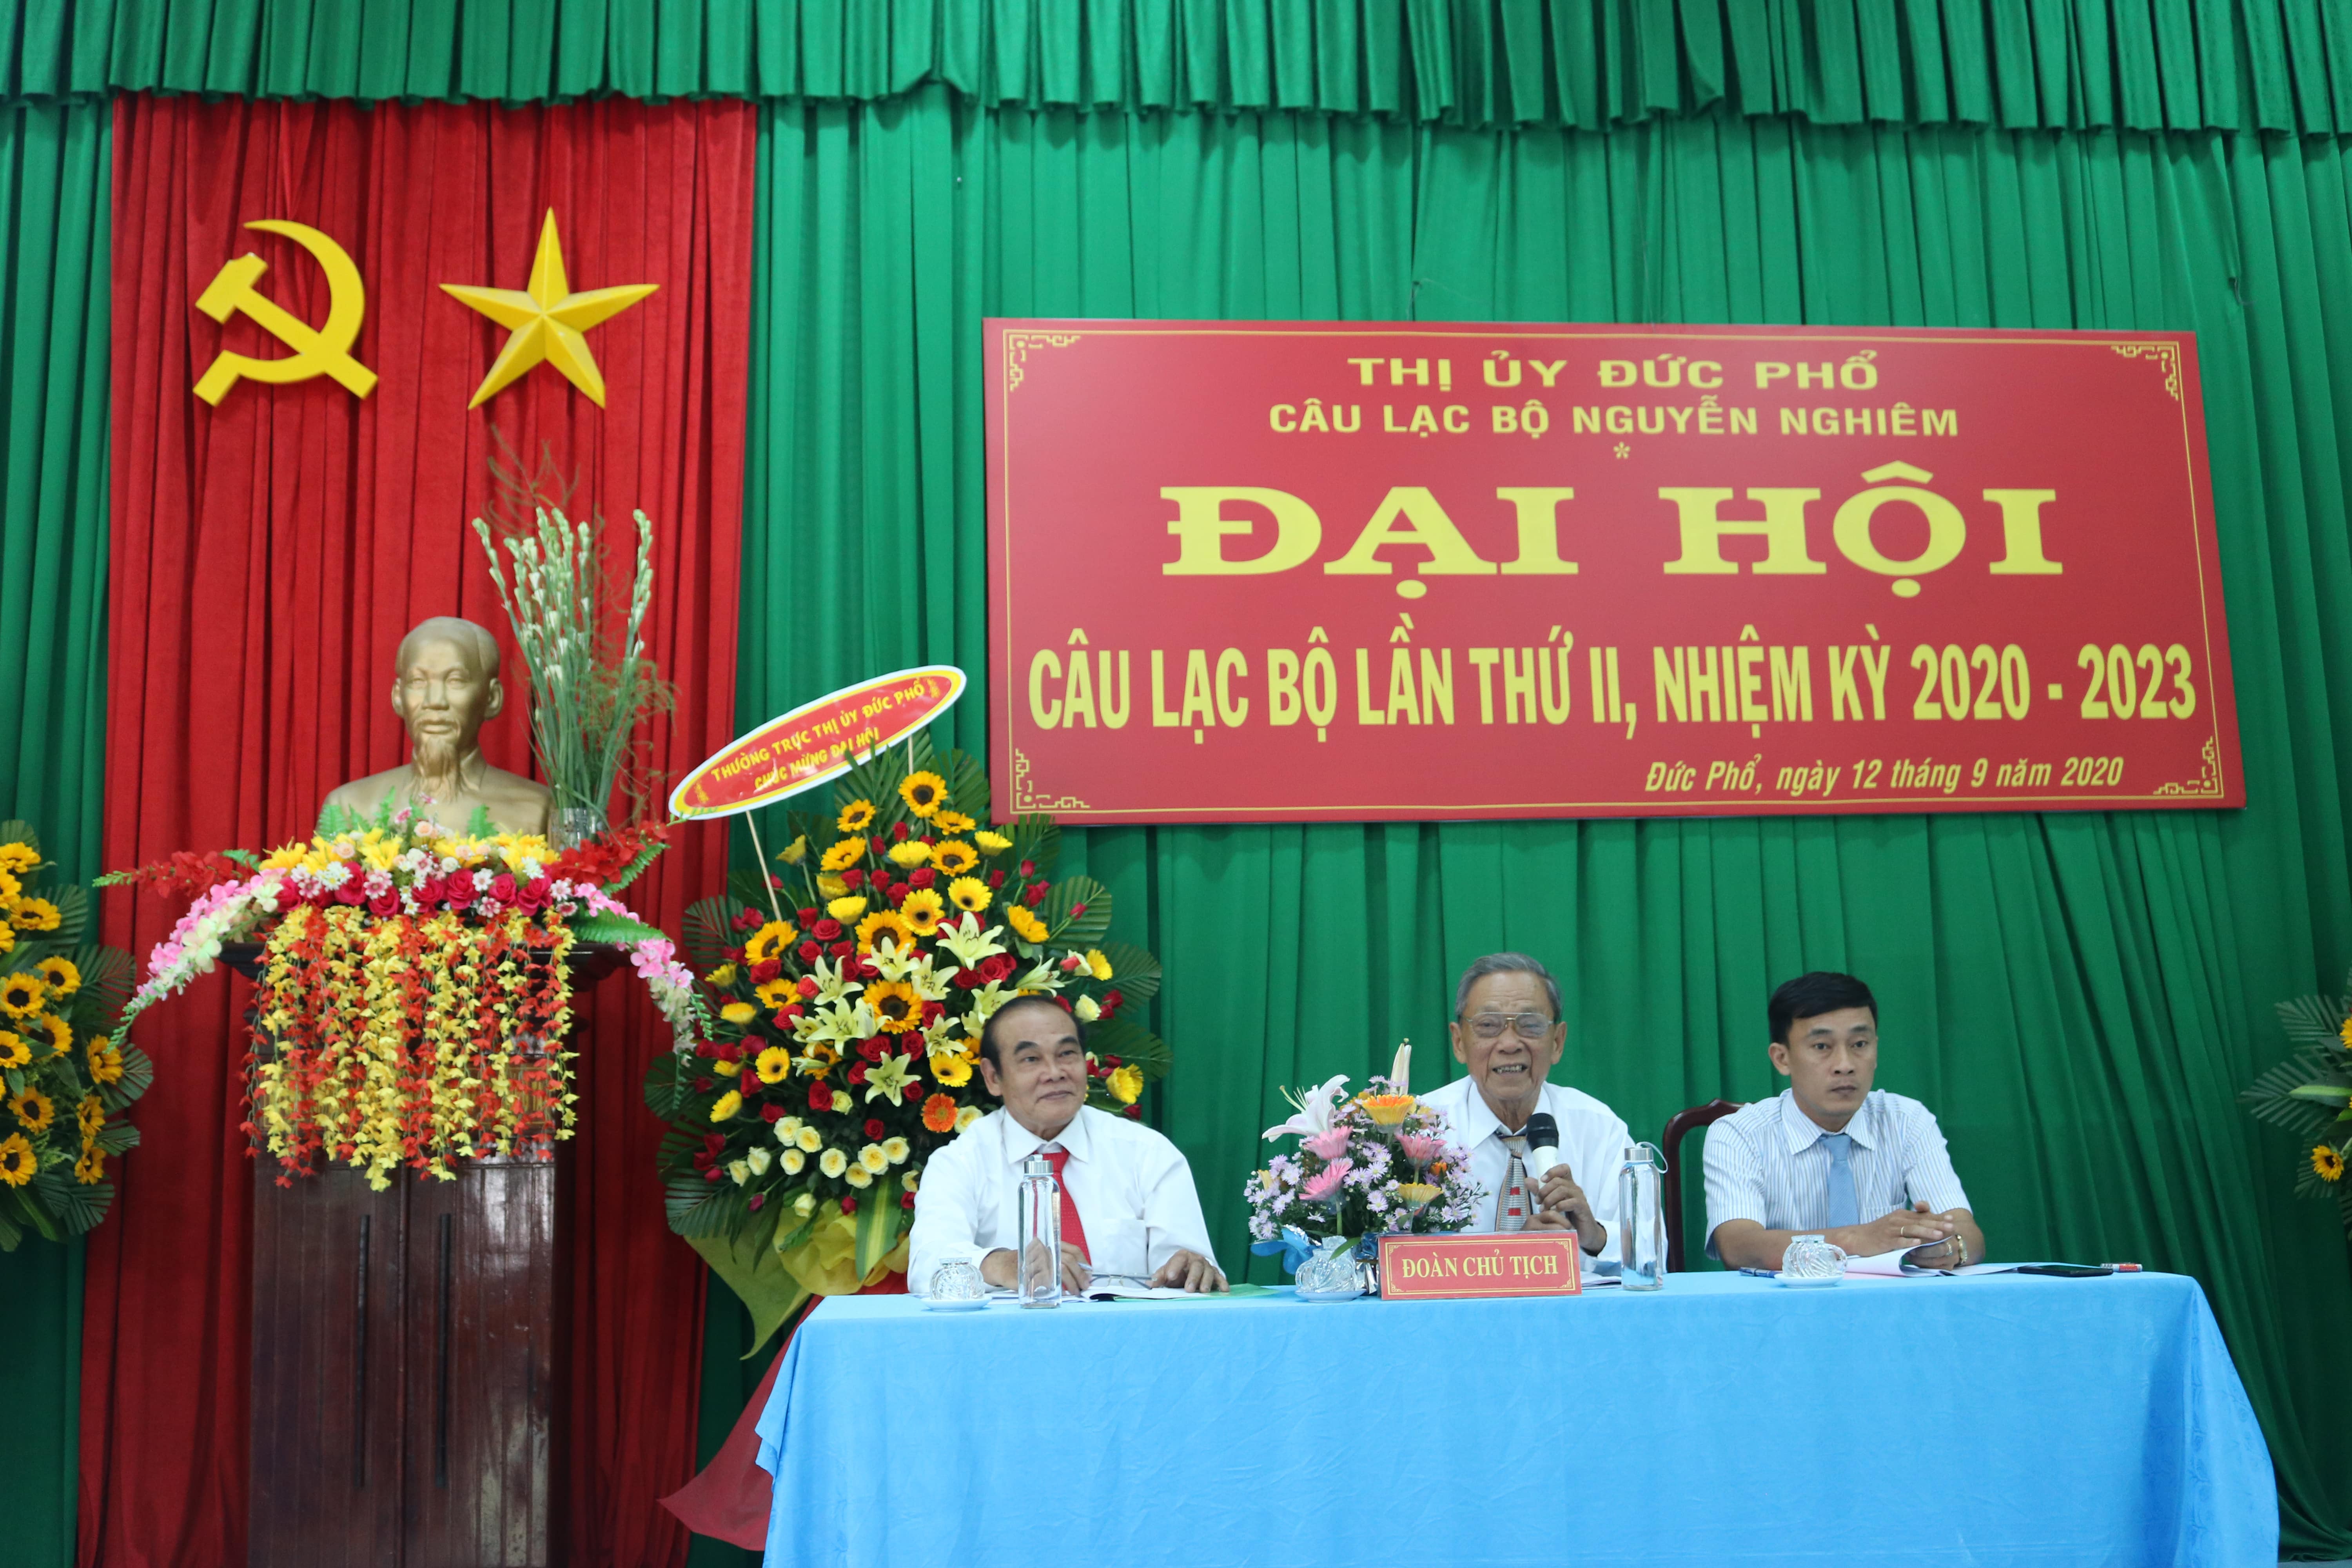 Câu lạc bộ Nguyễn Nghiêm tổ chức Đại hội lần thứ II